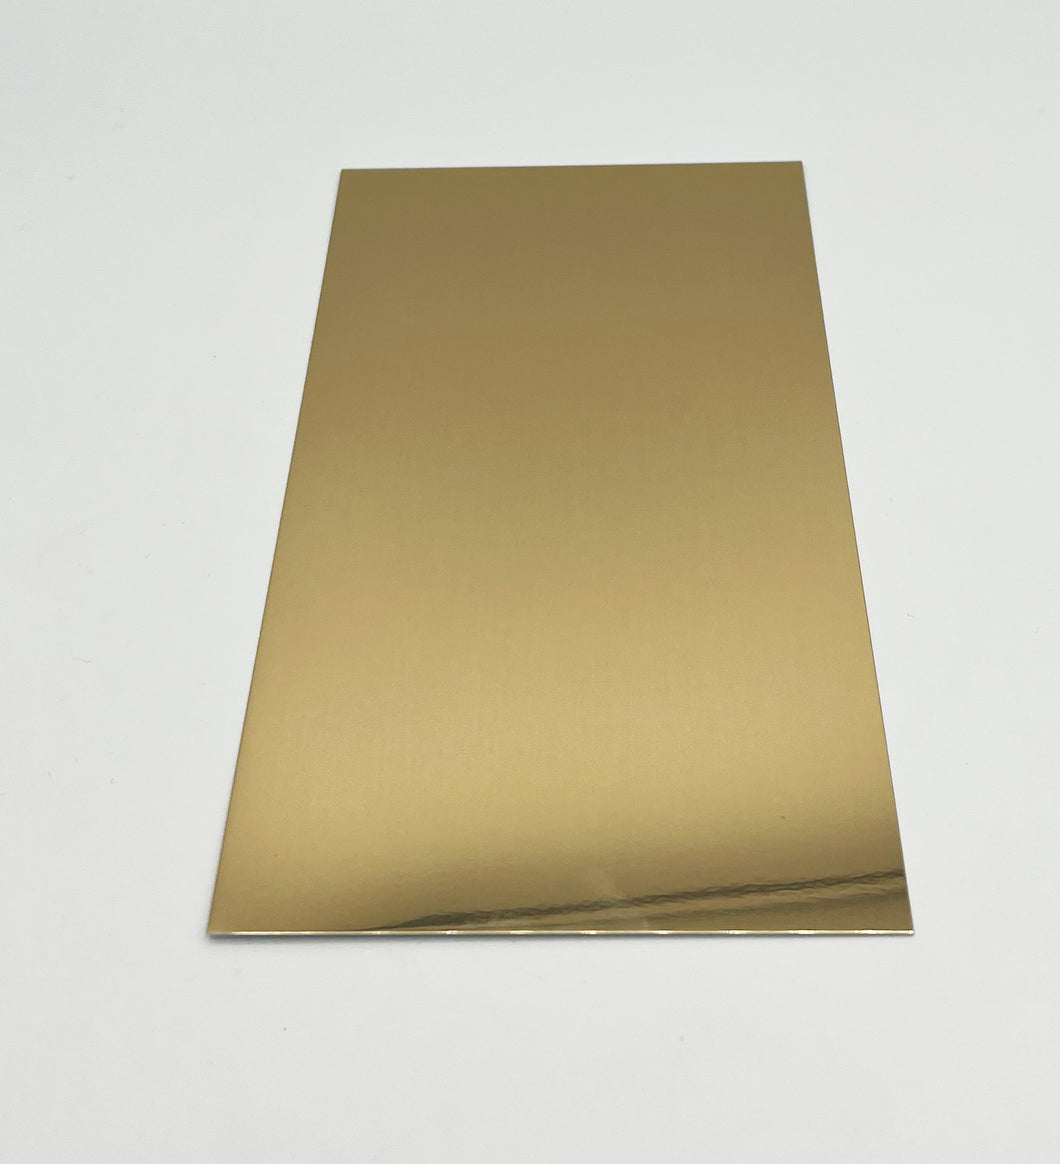 Aluminiumplatte in verschiedenen Größen, Gold, spiegelnd - KlaSopLeen UG